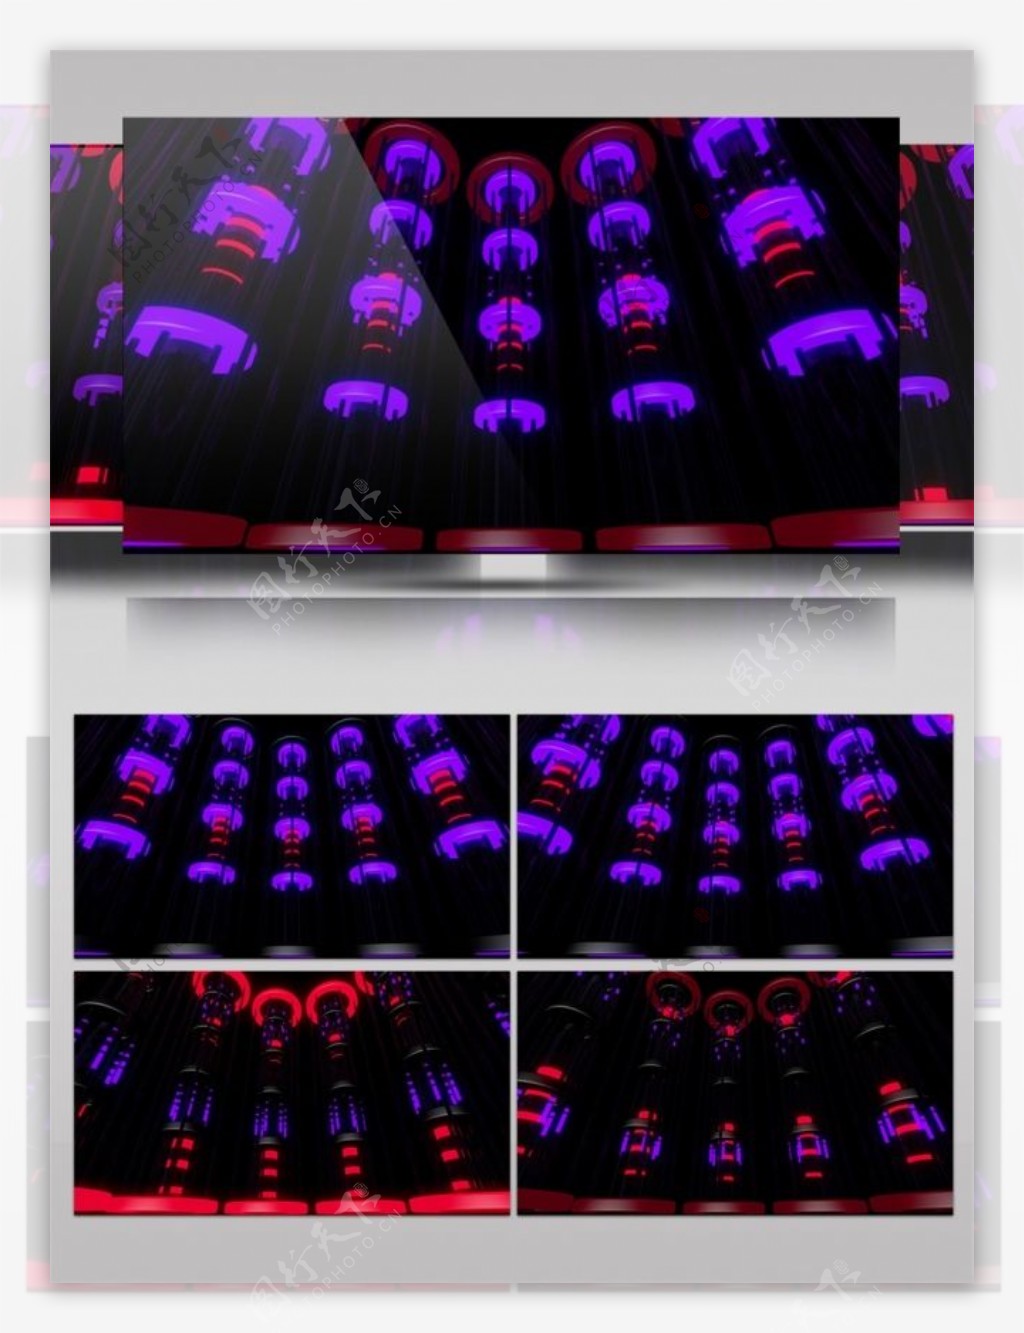 紫色光束灯笼动态视频素材